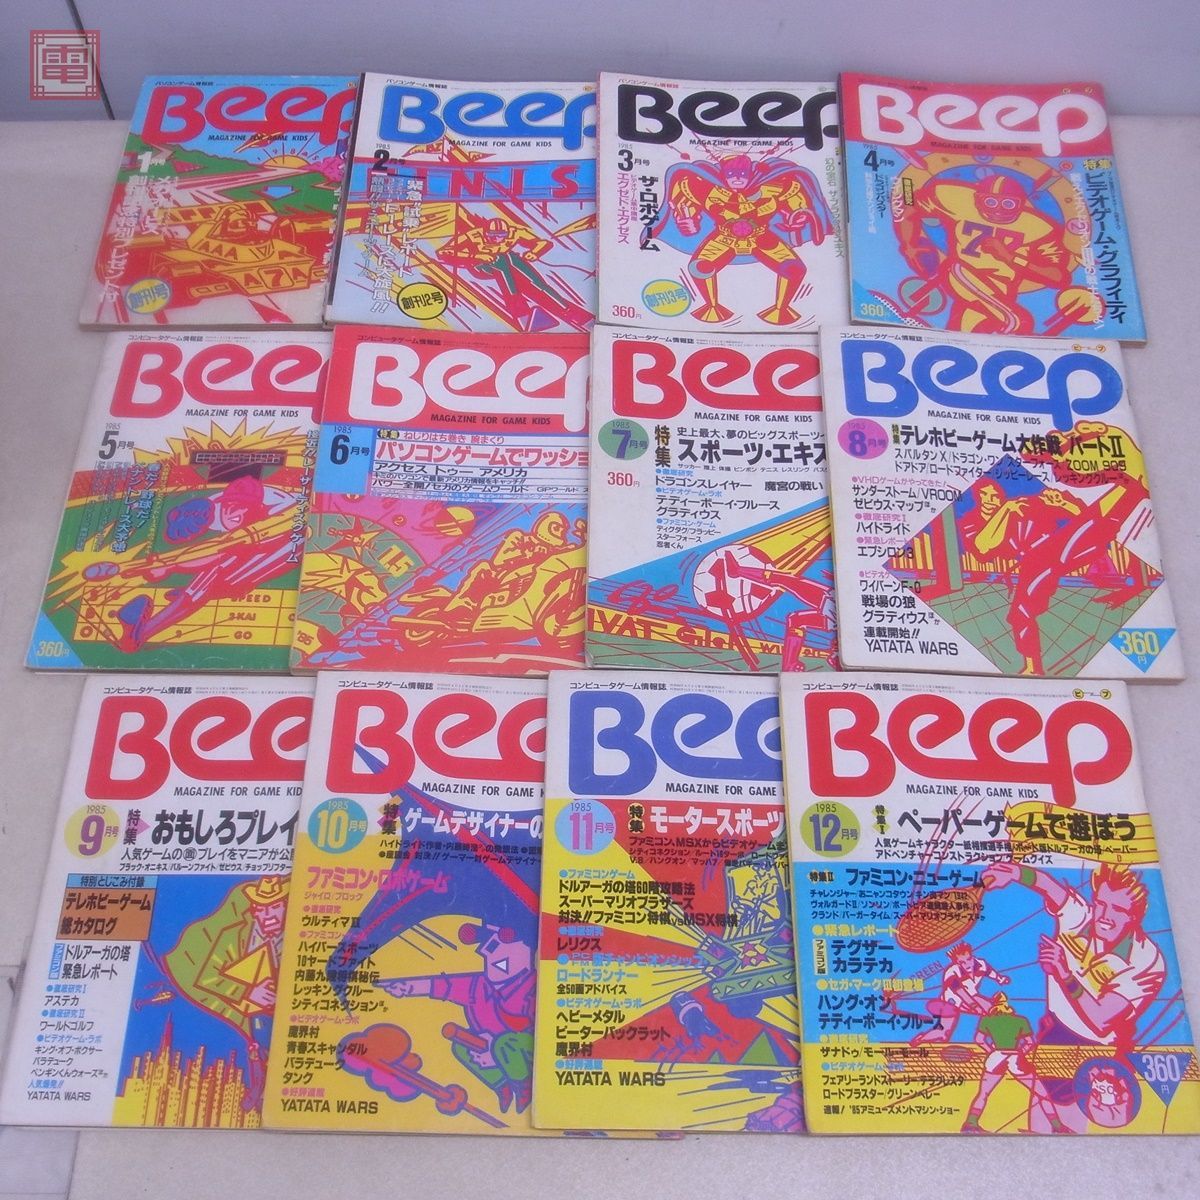  журнал компьютернные игры информация журнал ежемесячный Beep 1985 год 1 месяц .. номер ~12 месяц номер через год .. открытка есть совместно 12 шт. комплект Be p Япония SoftBank [20